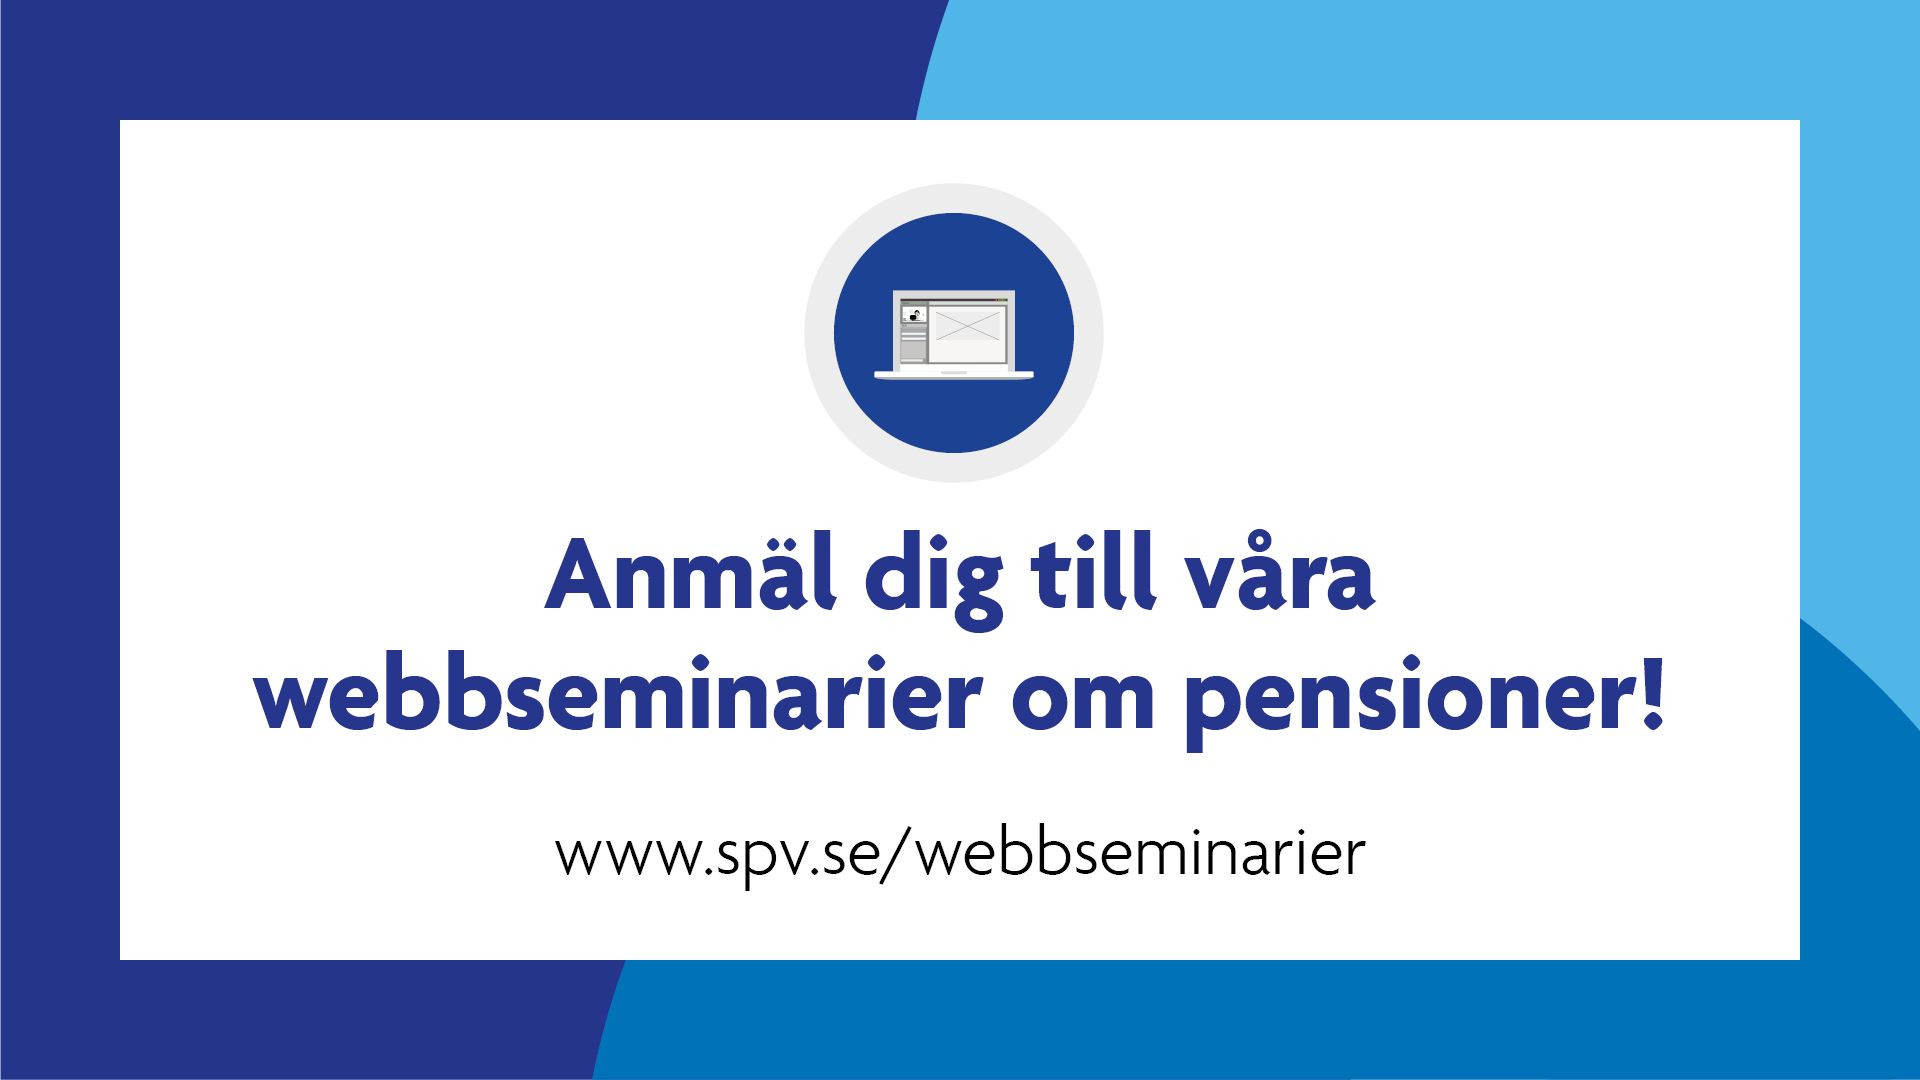 Anmäl dig till våra webbseminarier om pensioner! www.spv.se/webbseminarier